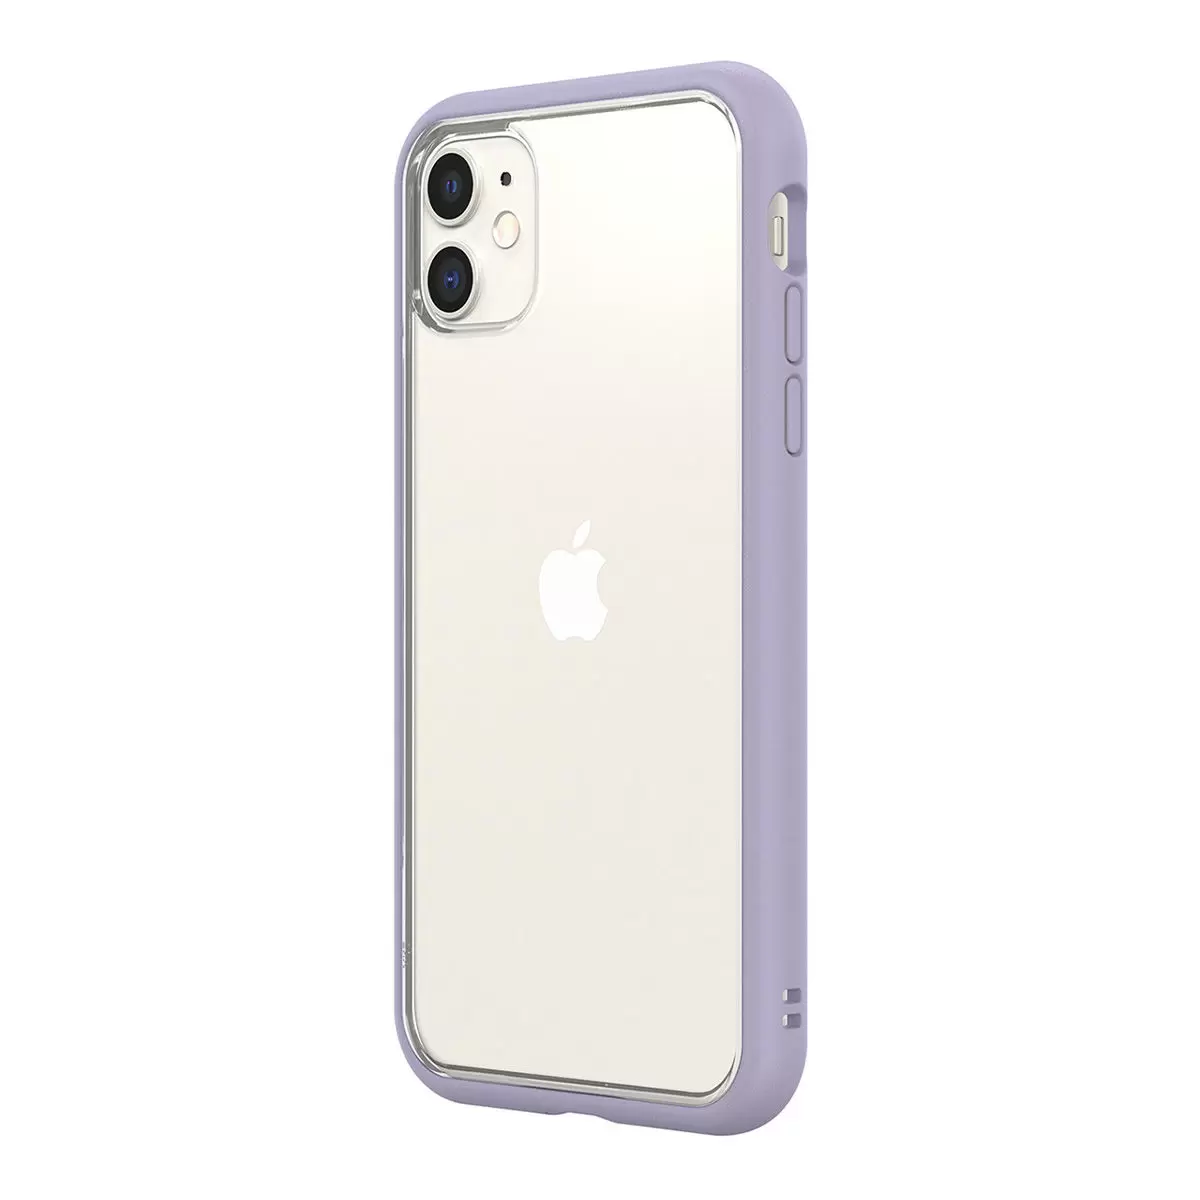 犀牛盾 iPhone 11 Mod NX 手機殼 + 9H 3D滿版玻璃保護貼 紫